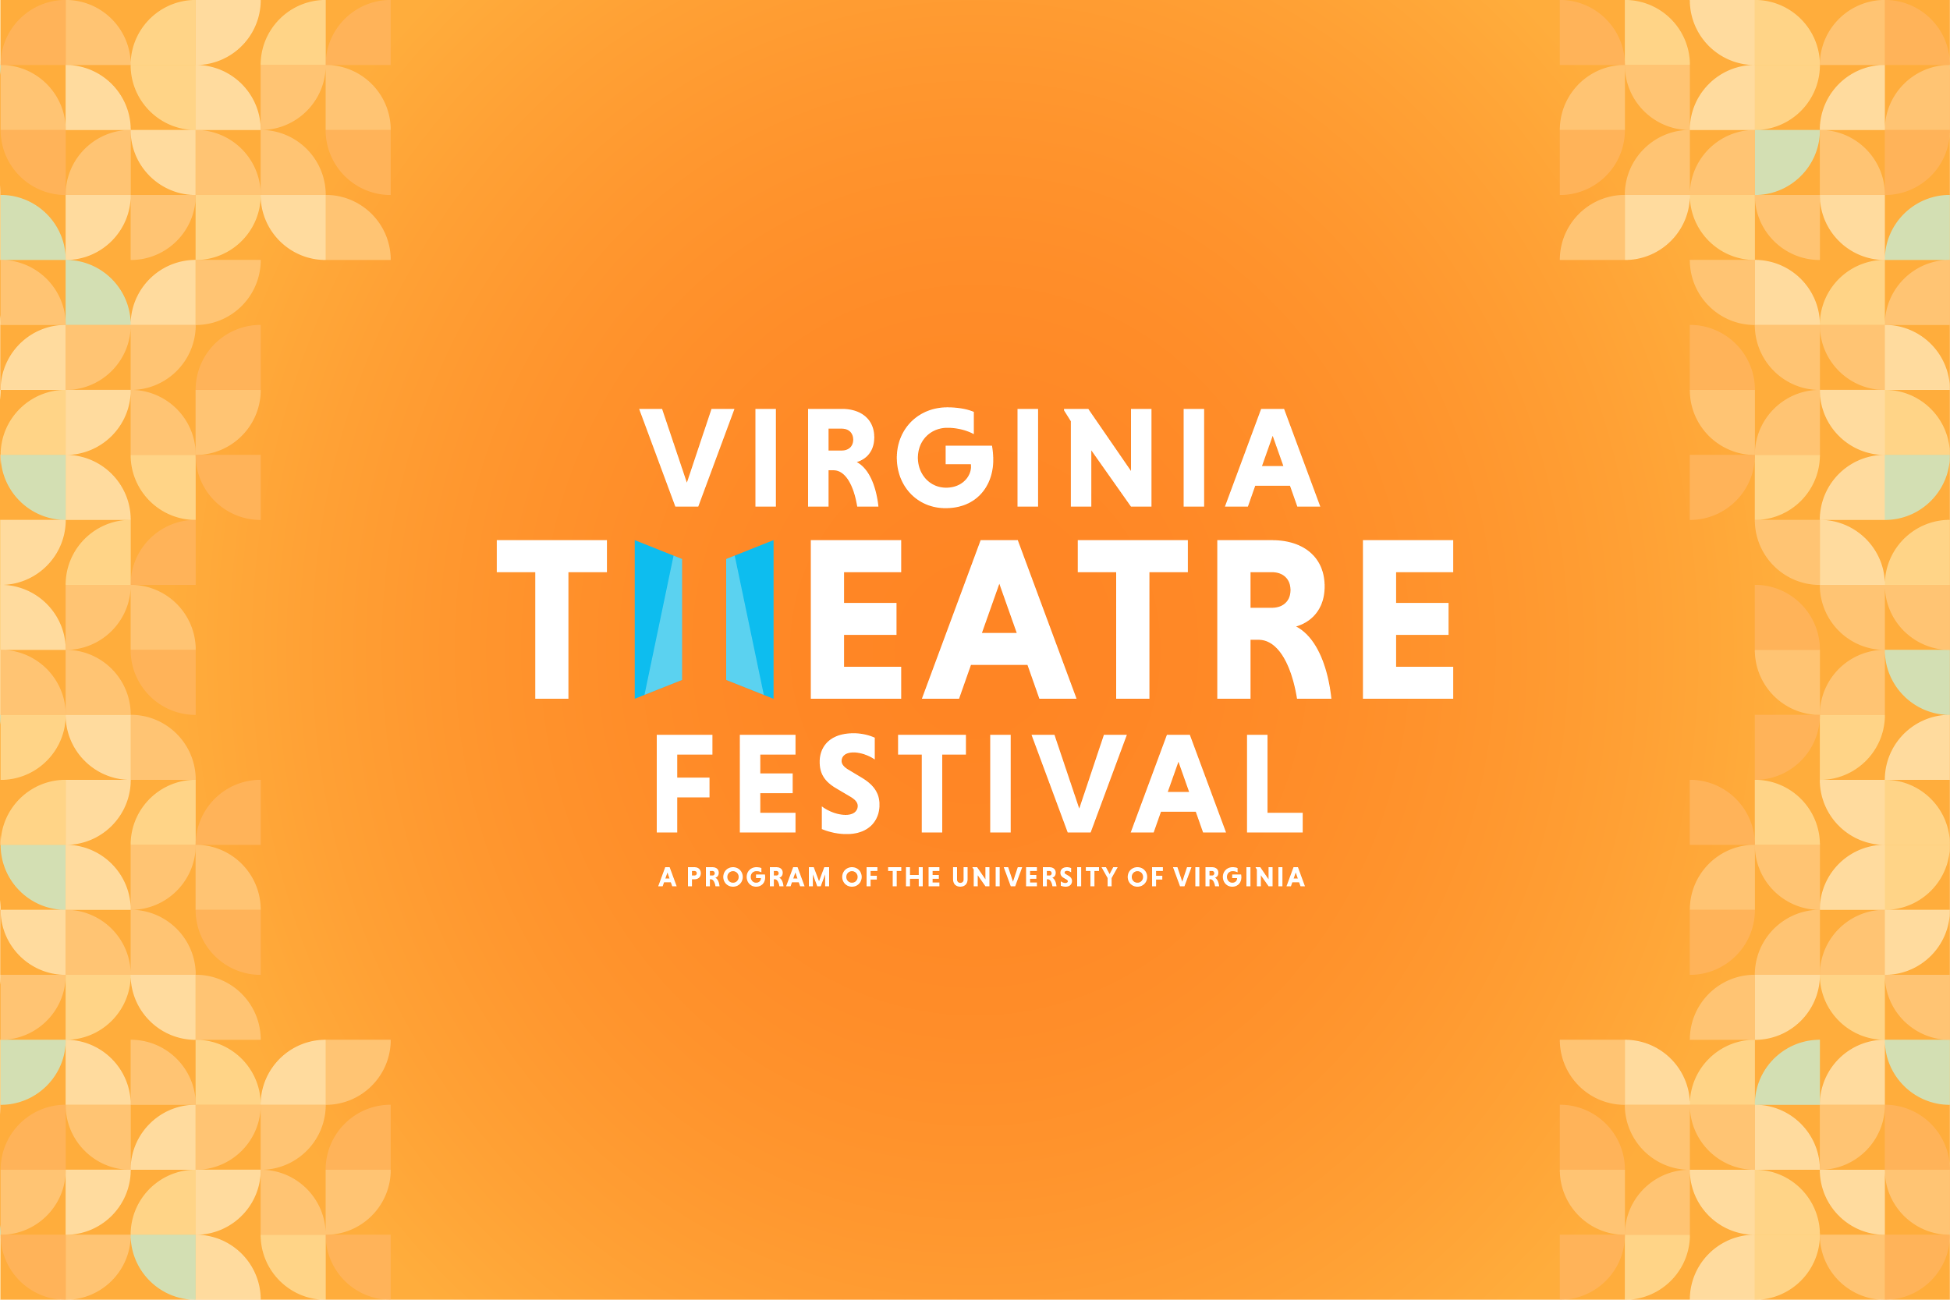 Virginia Theatre Festival Logo